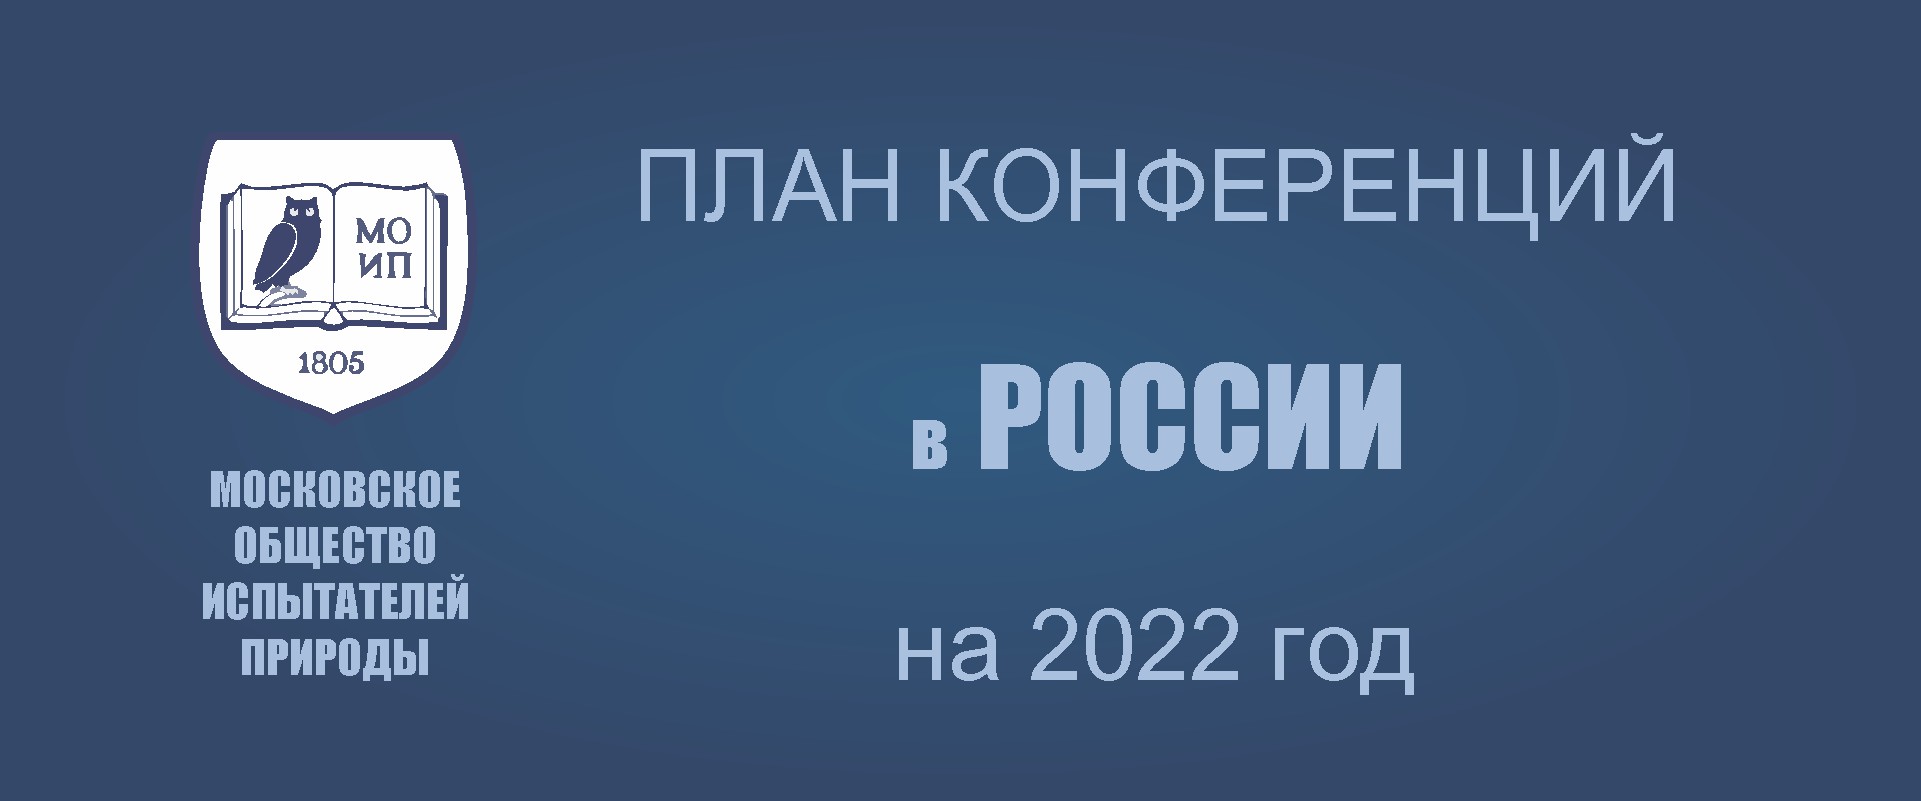 ПРЕДСТОЯЩИЕ КОНФЕРЕНЦИИ В РОССИИ в 2022 году